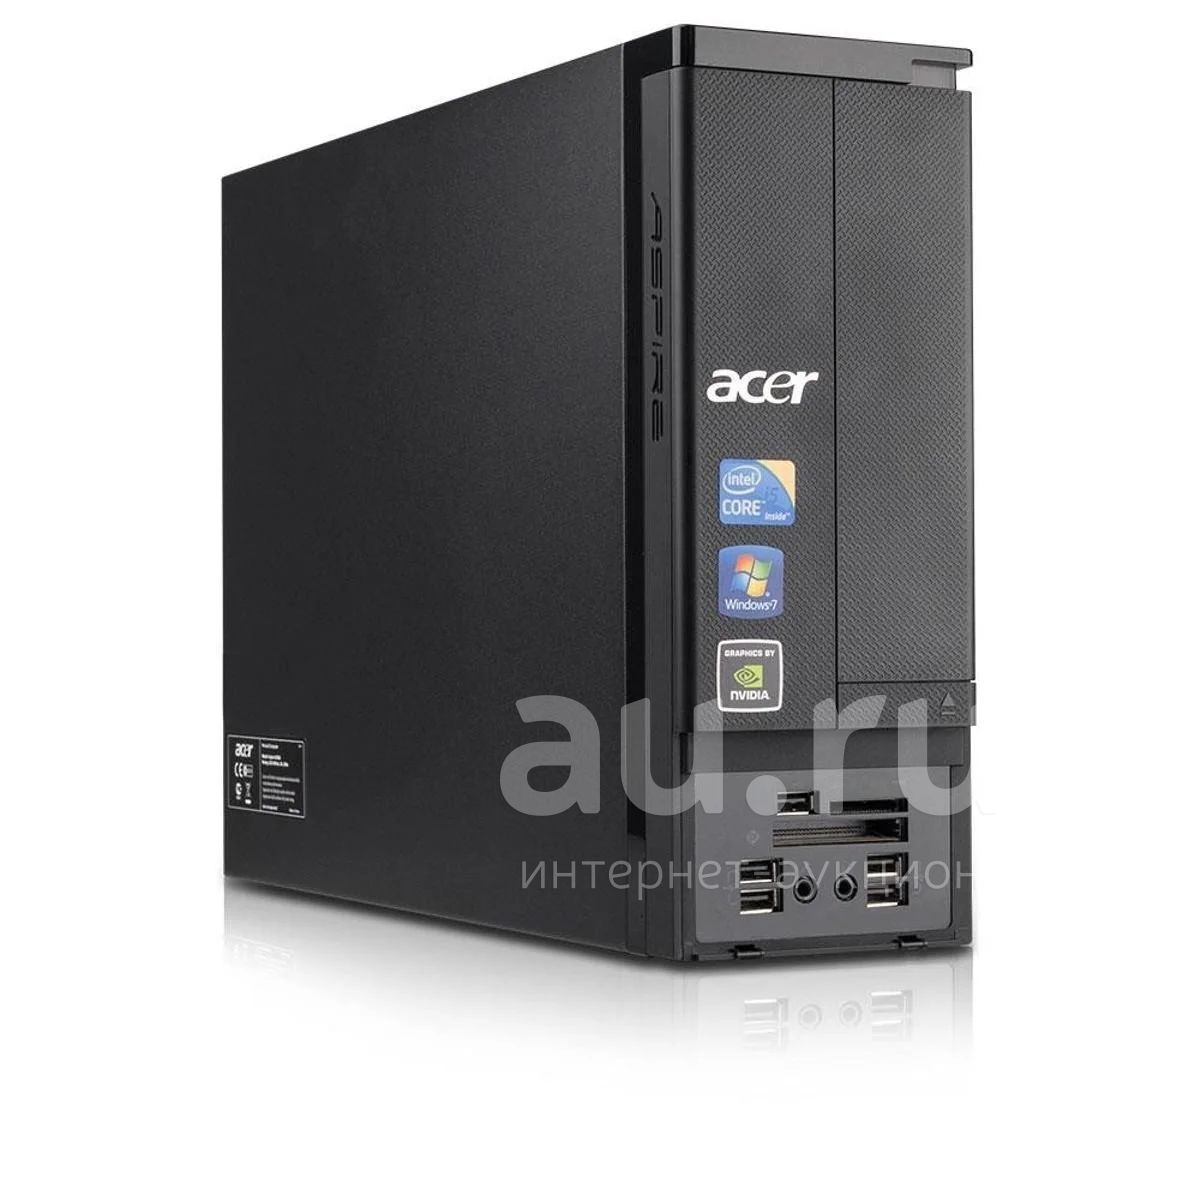 Aspire x. Acer x3950. Системный блок Acer Aspire ax3400. Acer Aspire x3950. Acer Aspire ax3950.